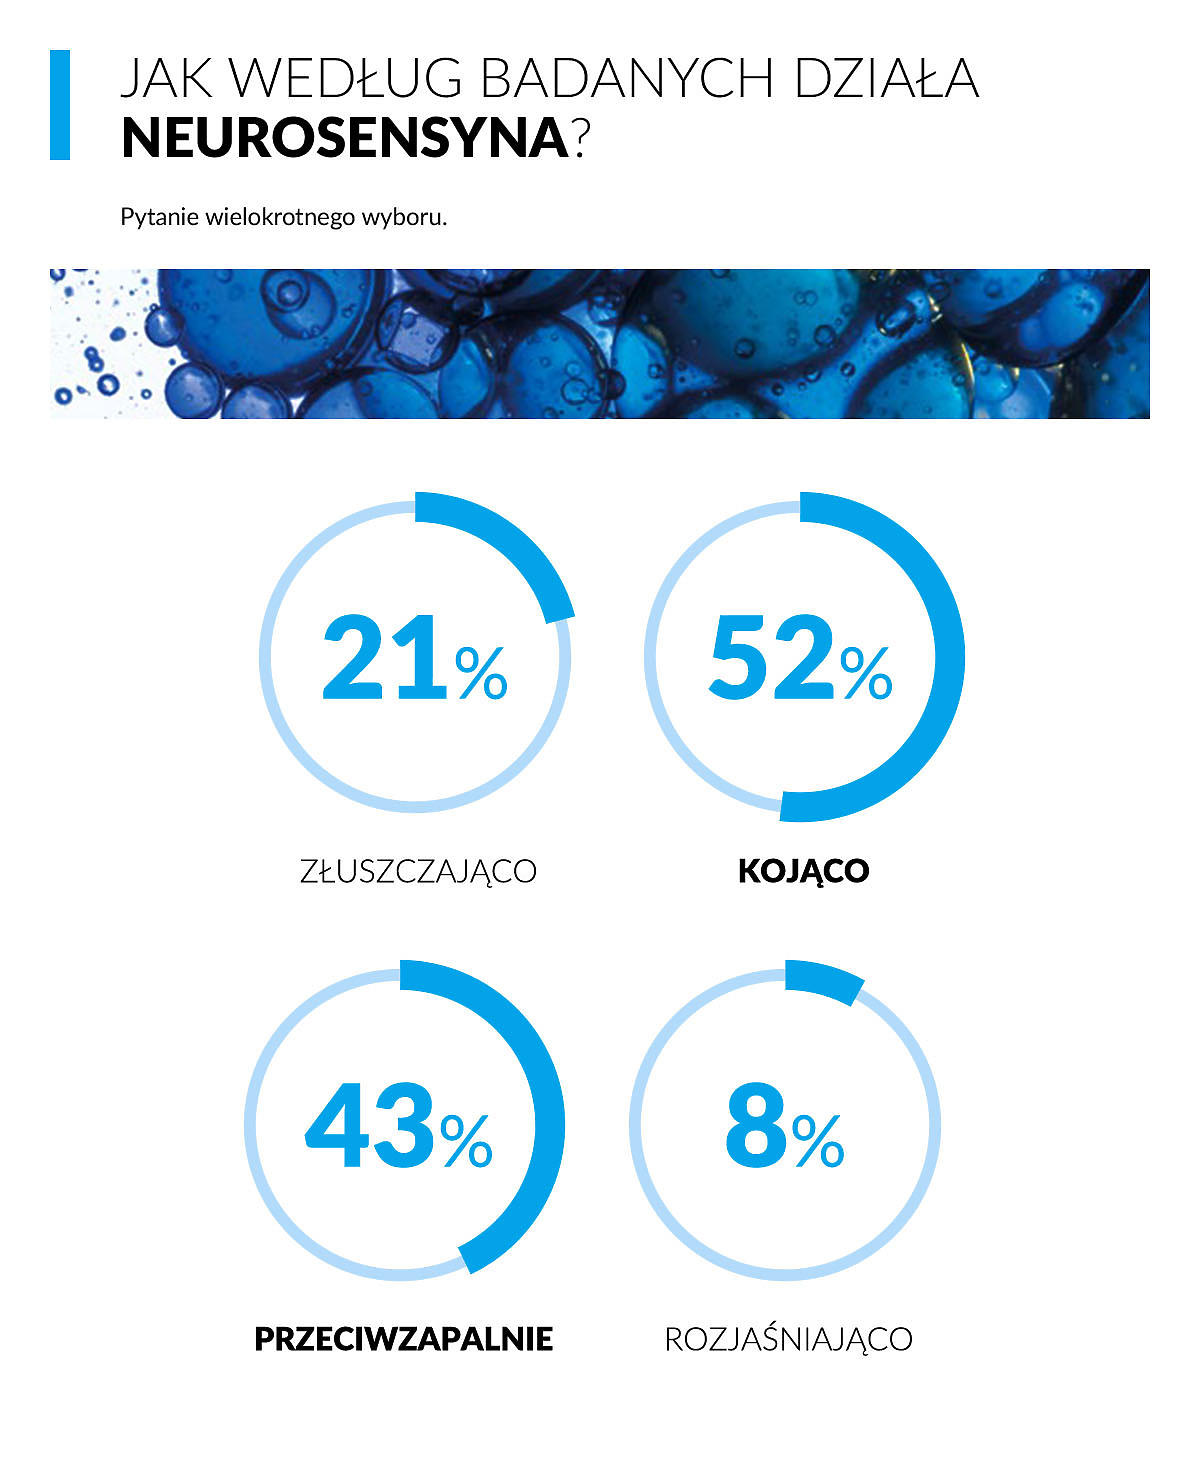 Jak według badanych działa neurosensyna - wyniki badania Wizaz.pl i La Roche Posay